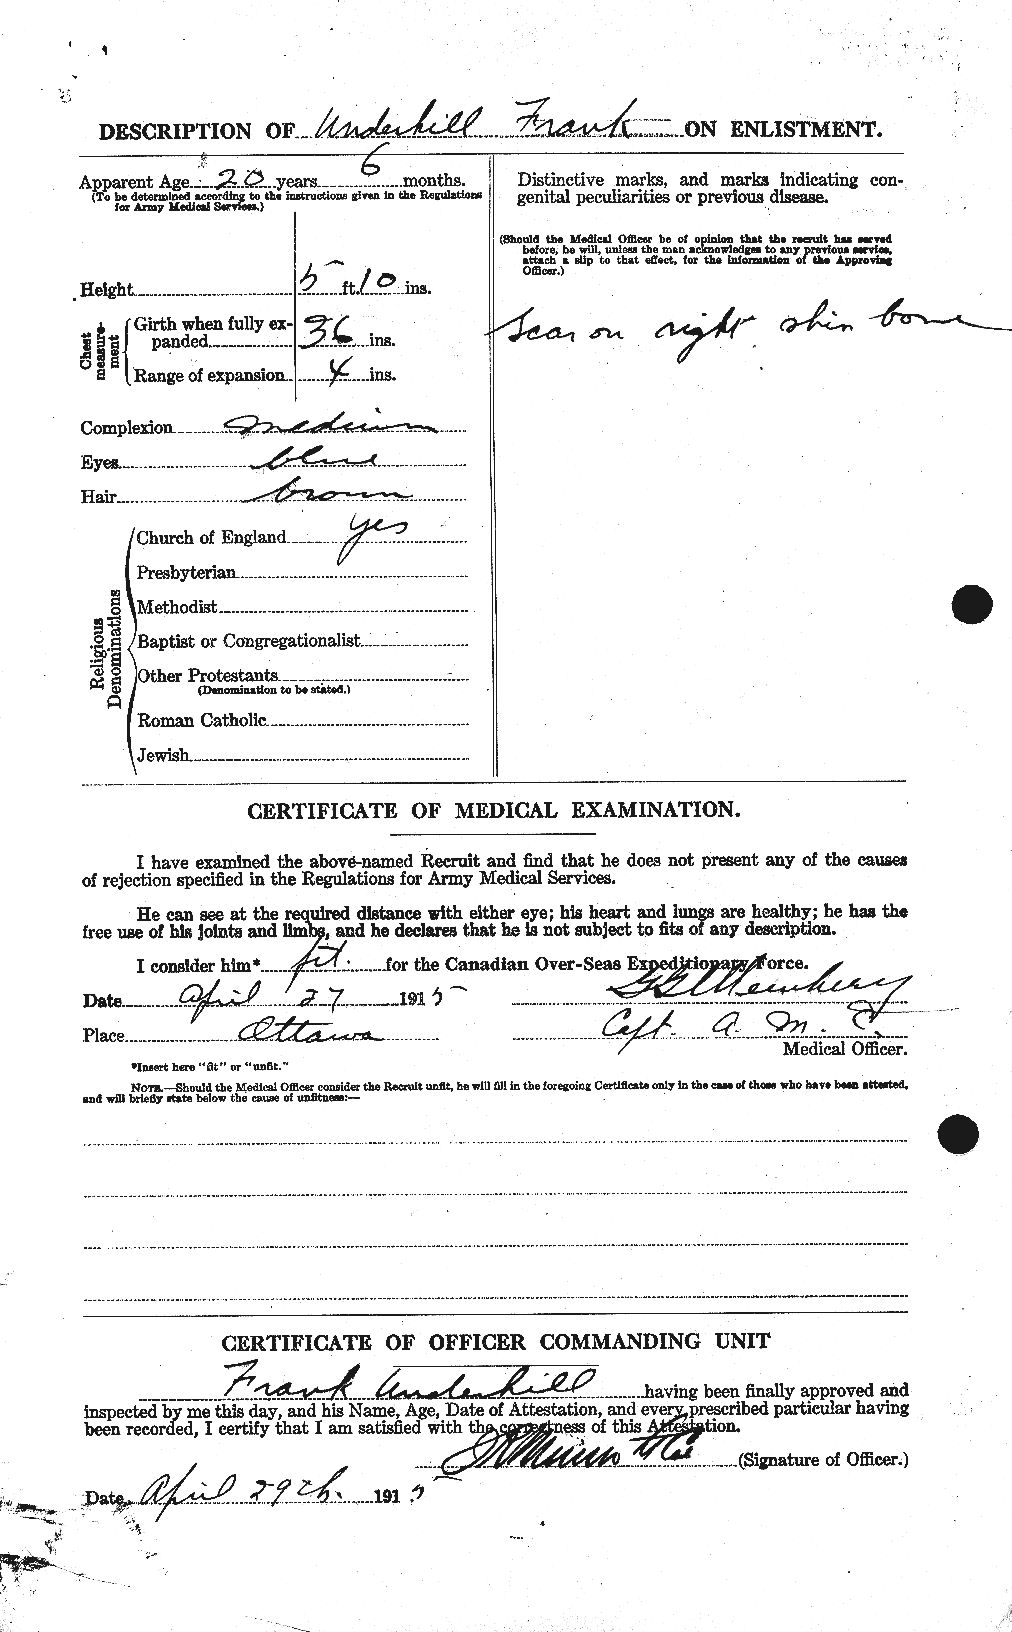 Dossiers du Personnel de la Première Guerre mondiale - CEC 647082b